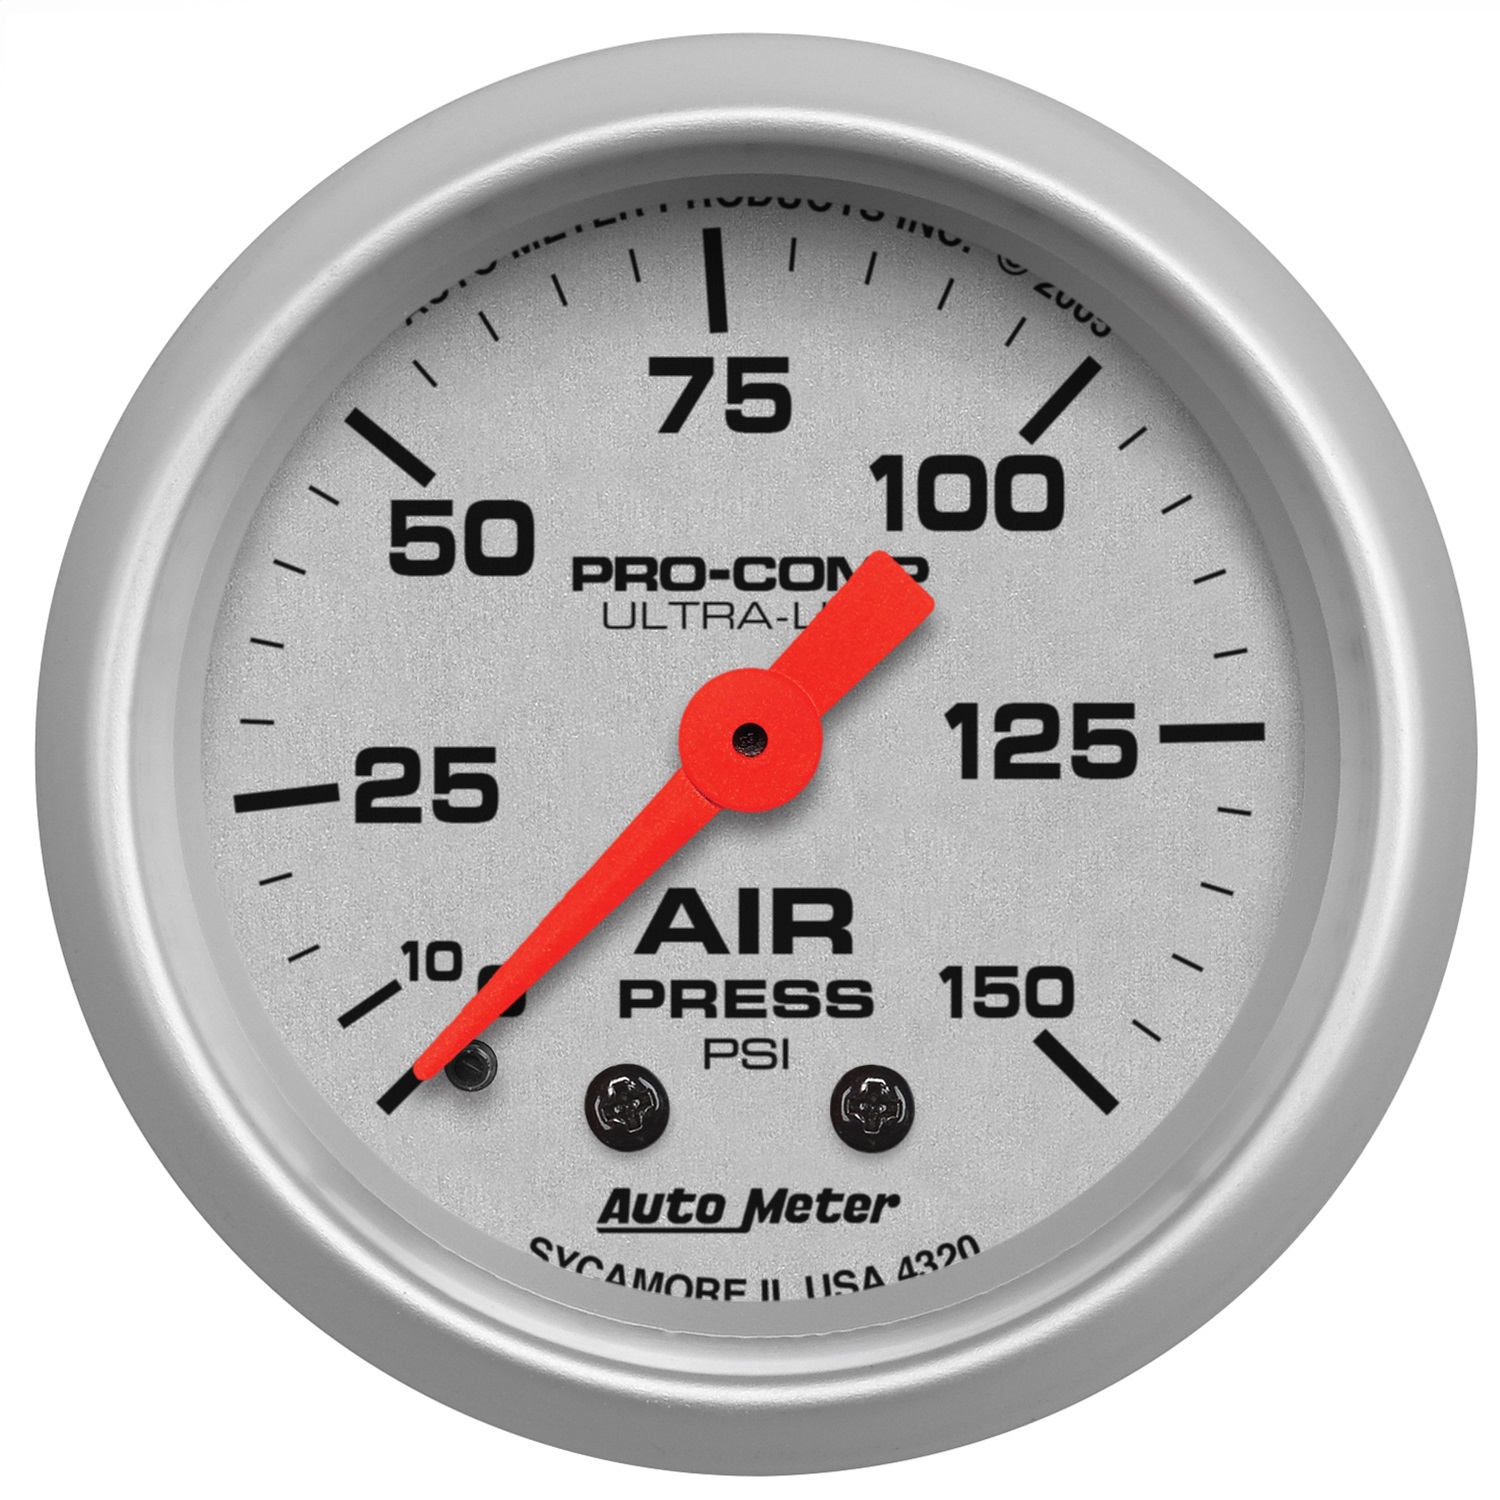 Auto Meter Auto Meter 4320 Ultra-Lite; Mechanical Air Pressure Gauge